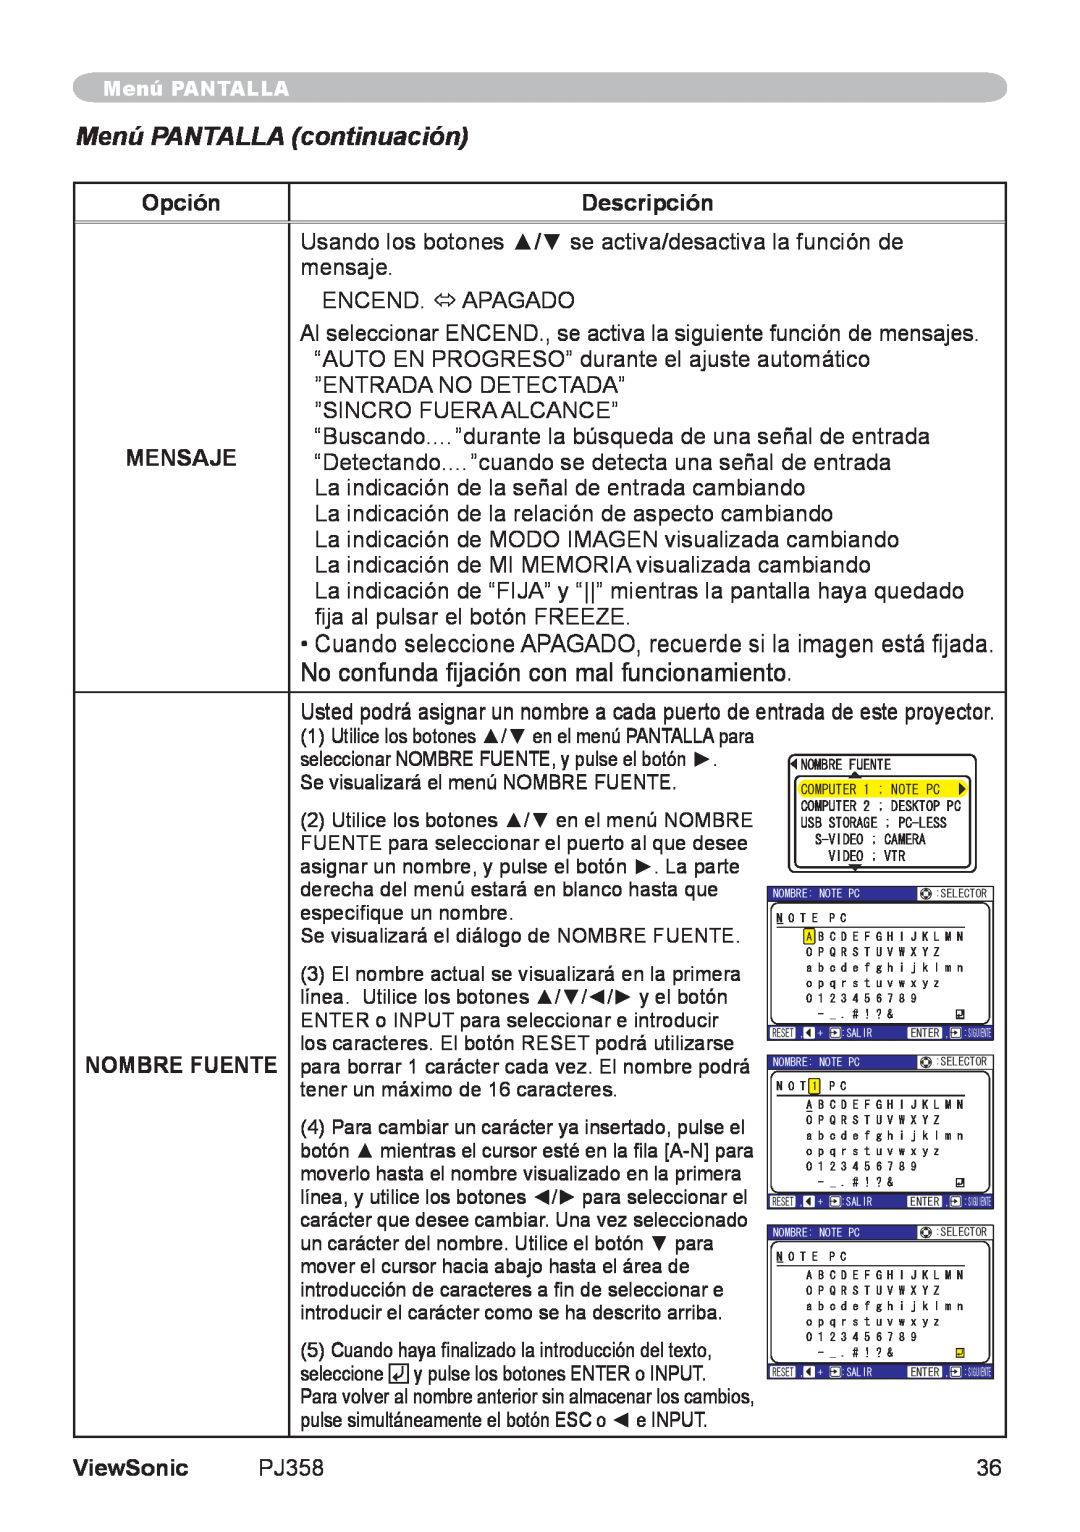 ViewSonic PJ358, VS11611 manual Menú PANTALLA continuación, Opción, Descripción, Mensaje, Nombre Fuente, ViewSonic 